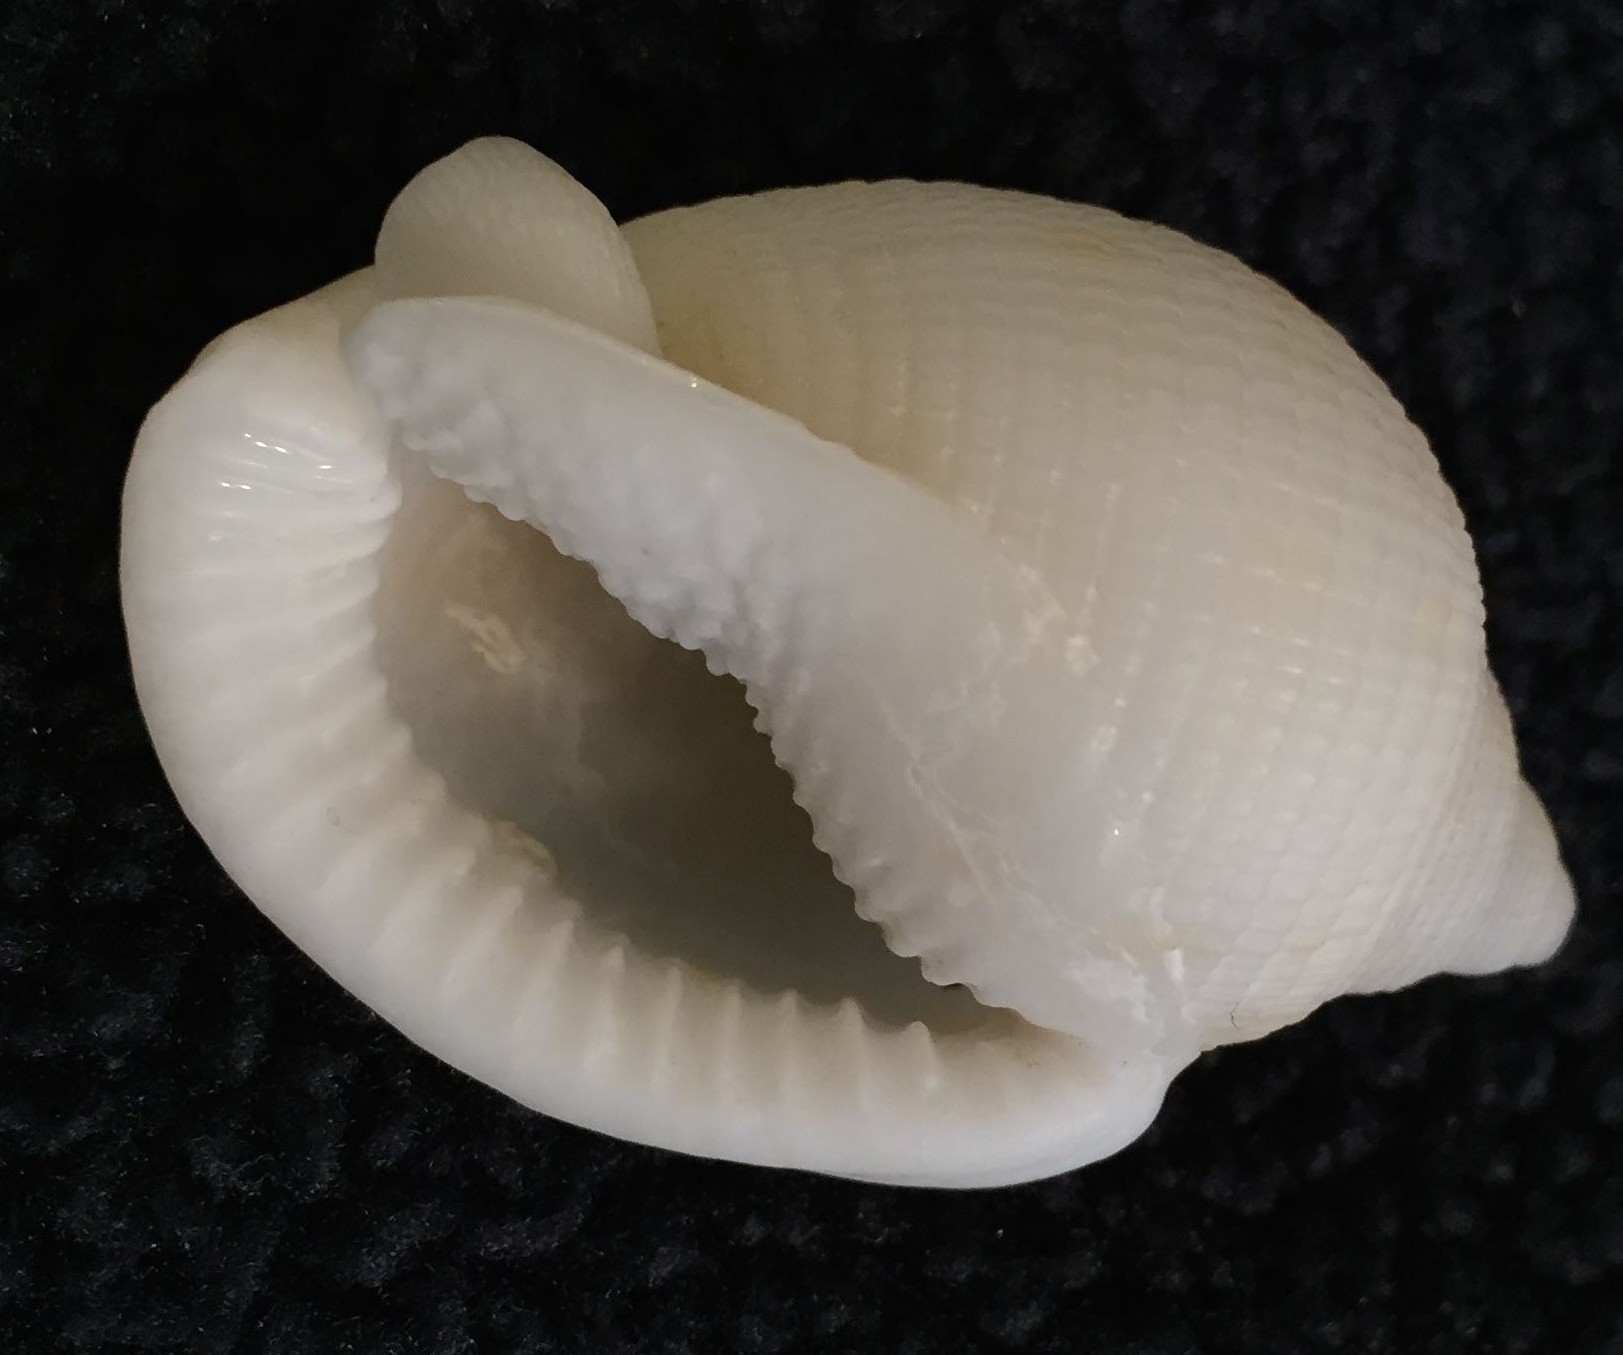 Albino Bonnet Seashell, 2-27-15, Sanibel Island, SeaShell News & Shelling.